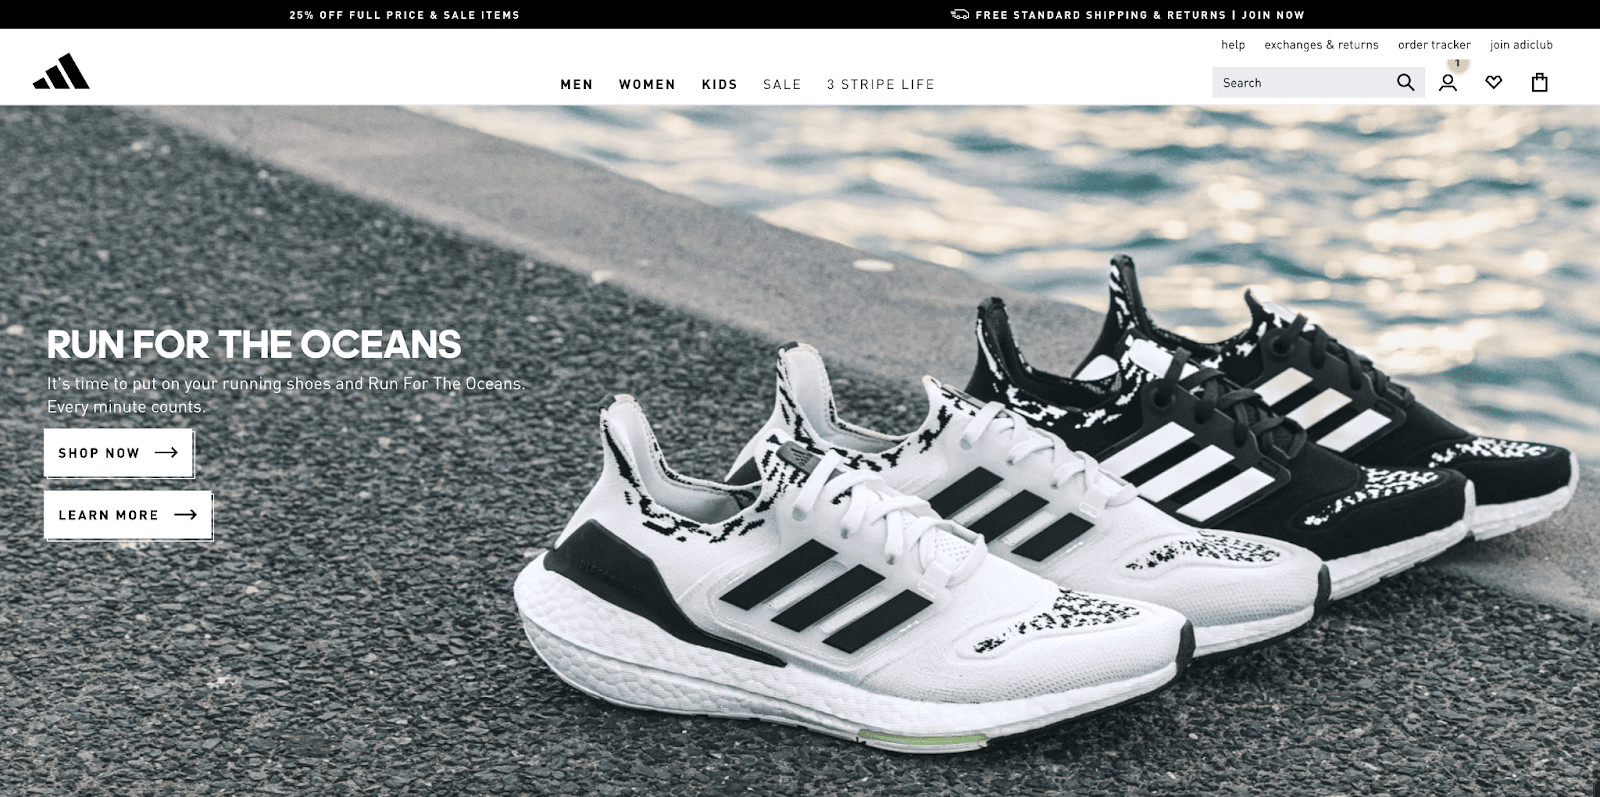 Ein Screenshot zeigt die Homepage von Adidas mit dem Text "Run for the oceans" und einem Foto von mehreren Paar Schuhen